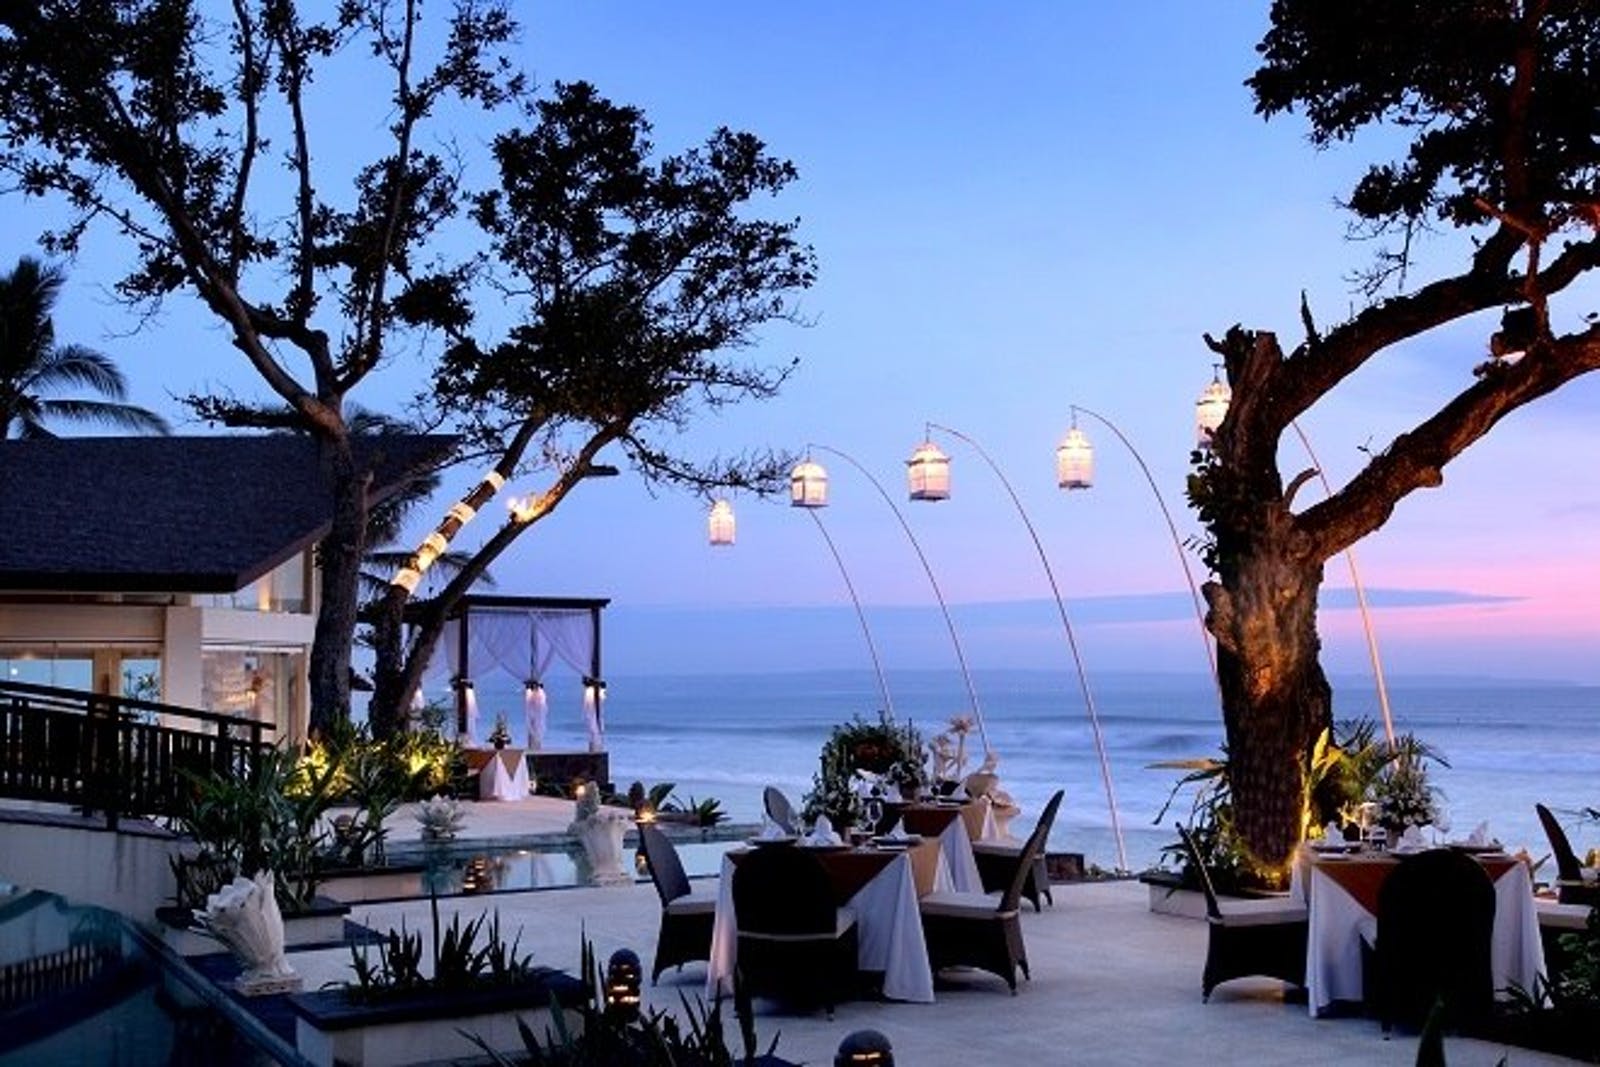 TempatTempat Wisata Menarik di Bali